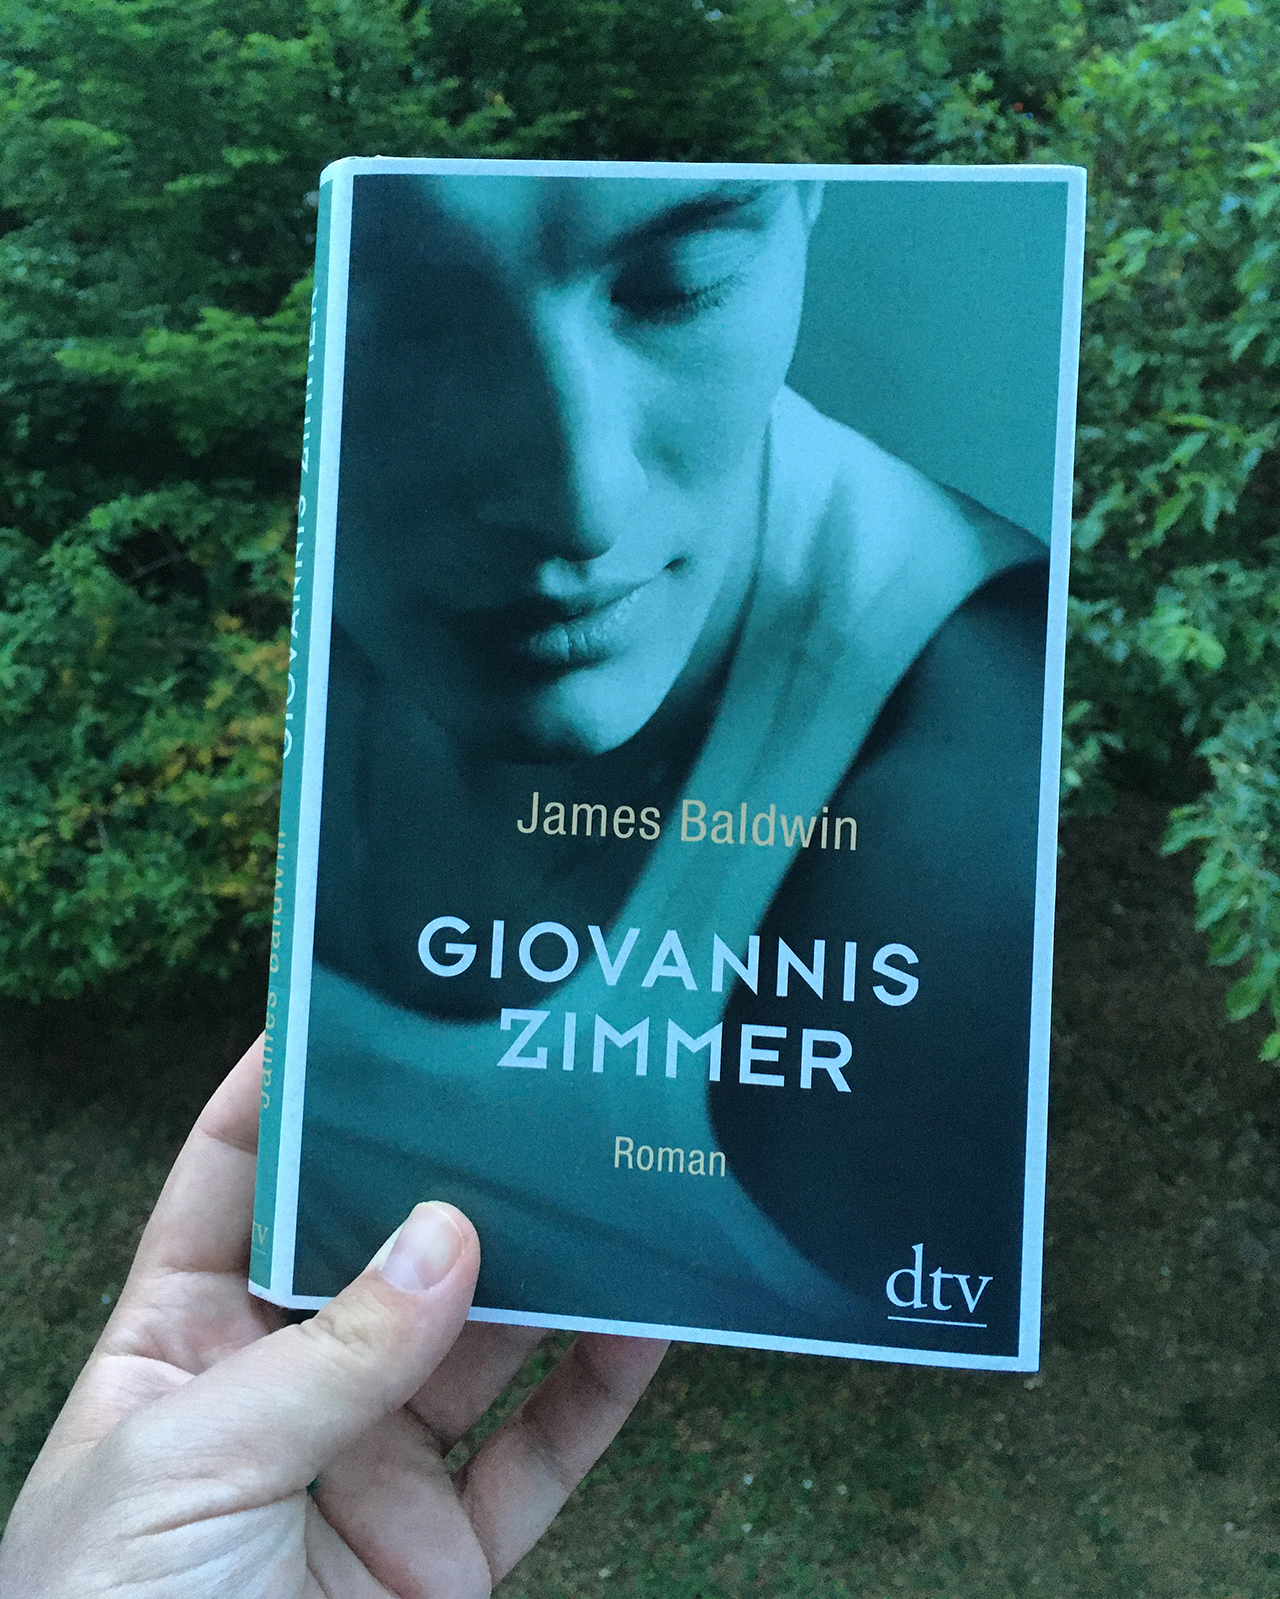 James Baldwin - "Giovannis Zimmer"